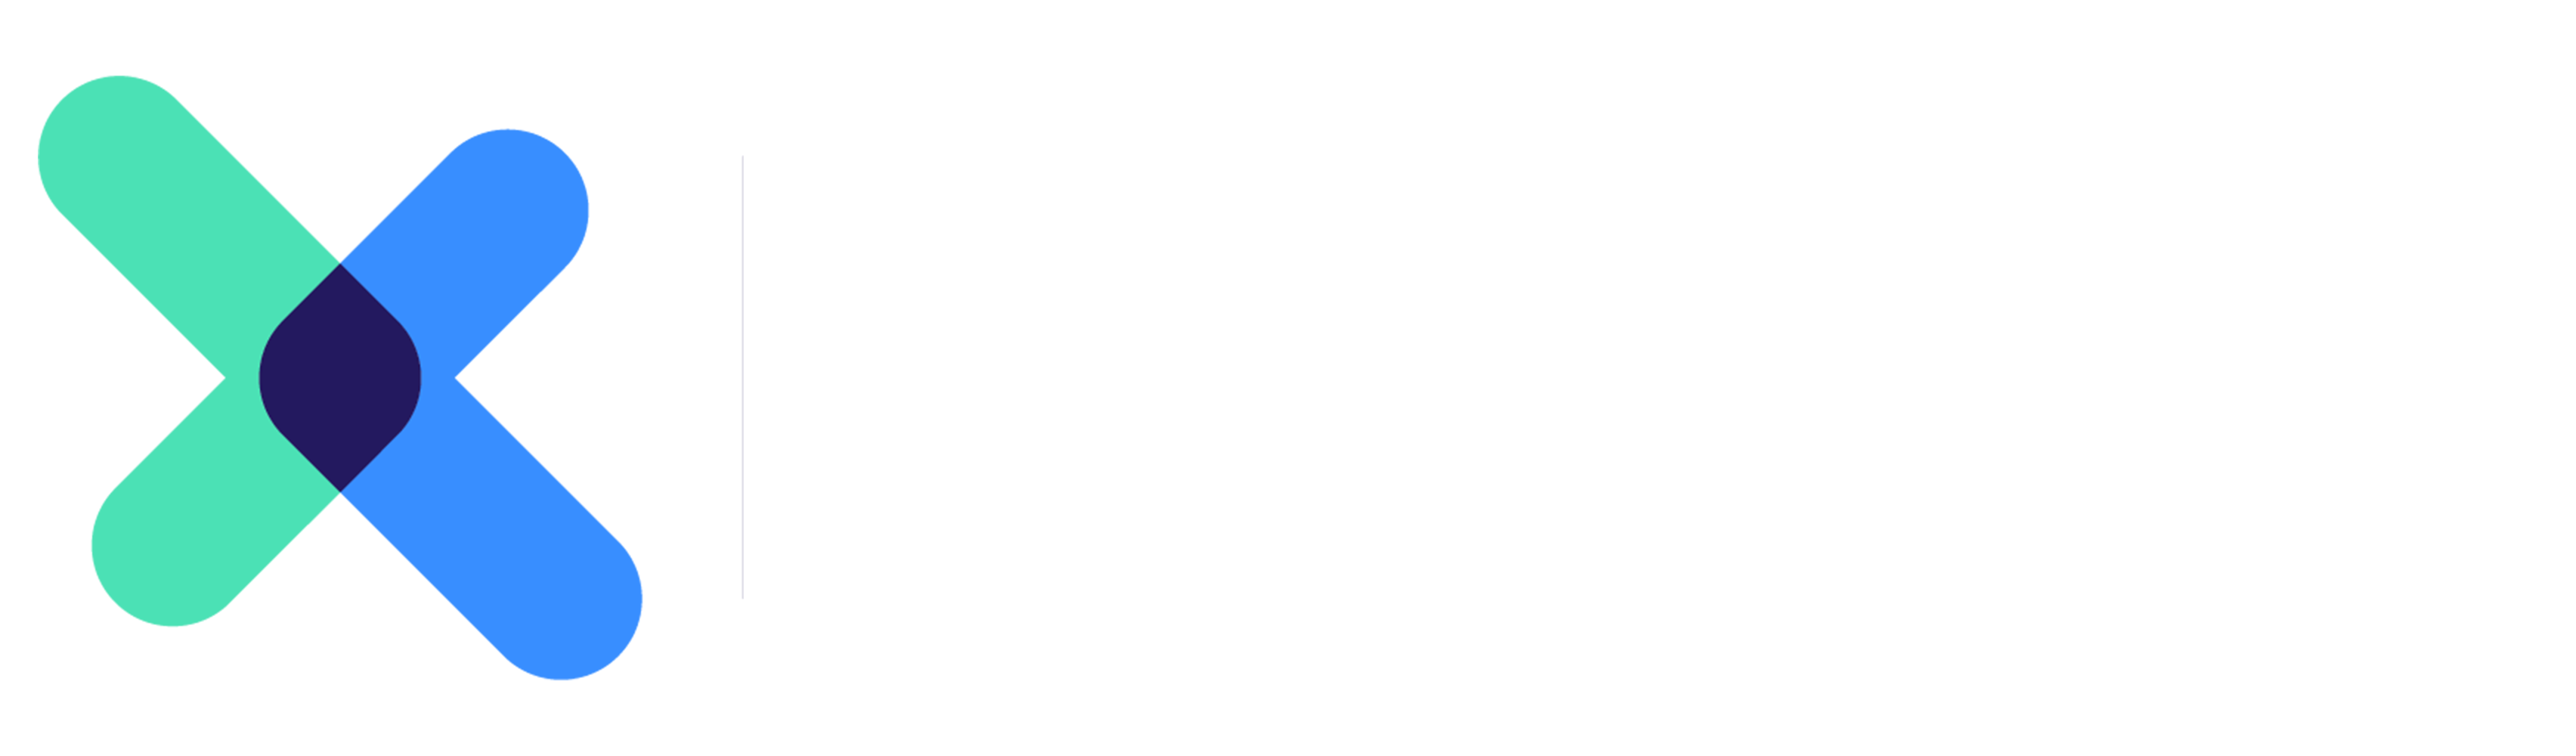 RockX